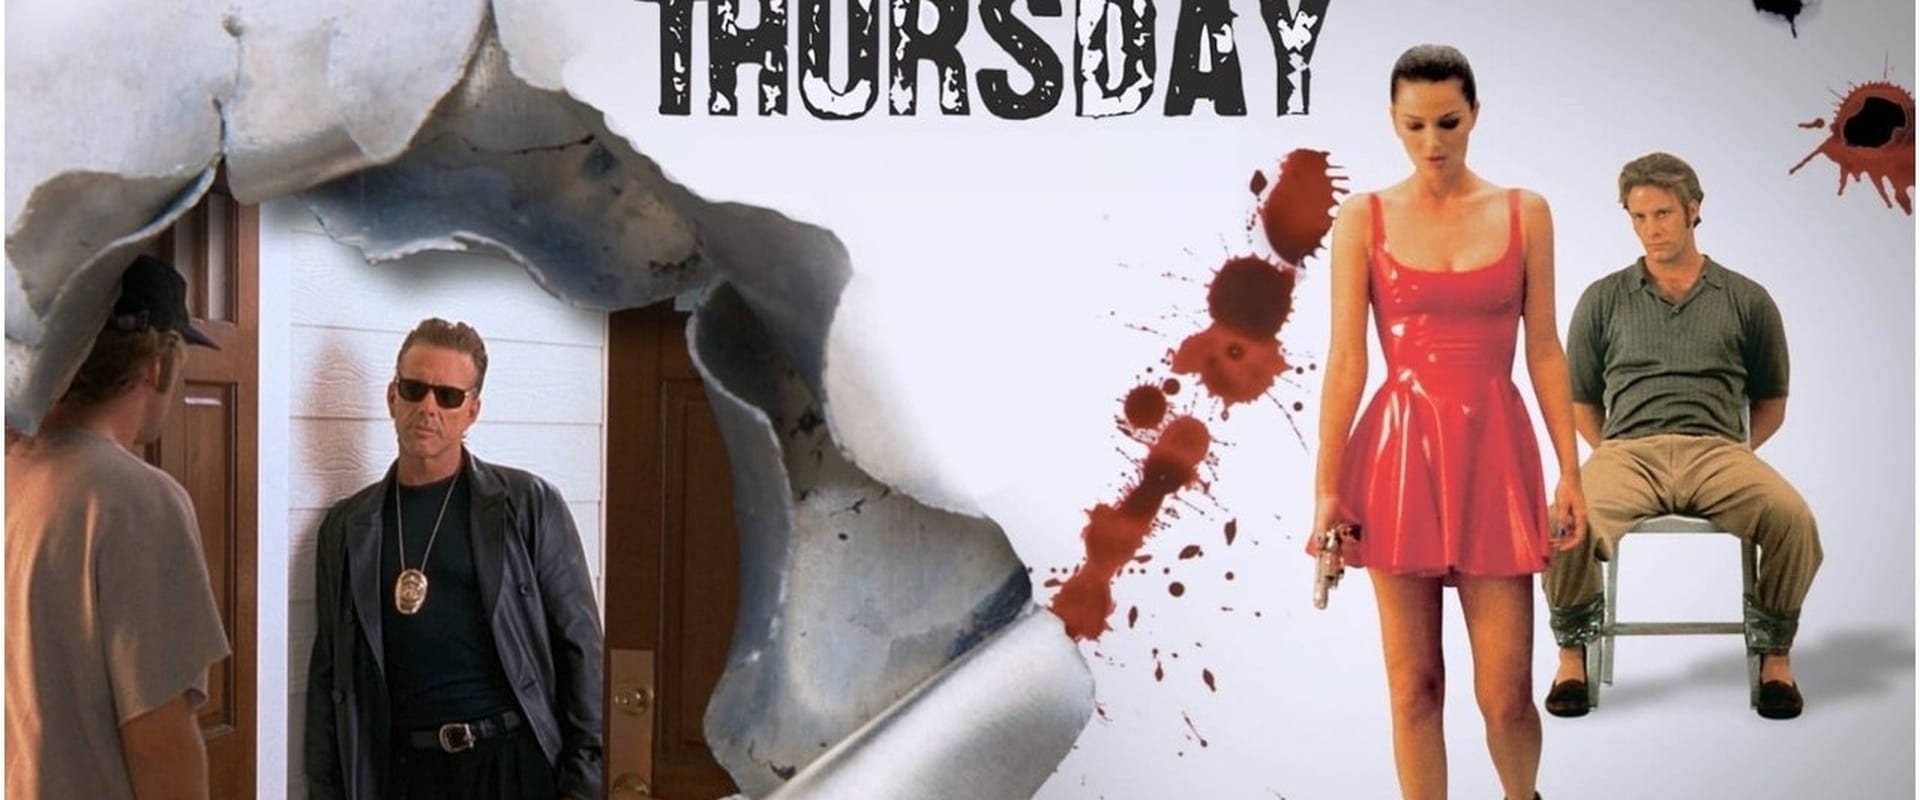 Thursday - Ein mörderischer Tag